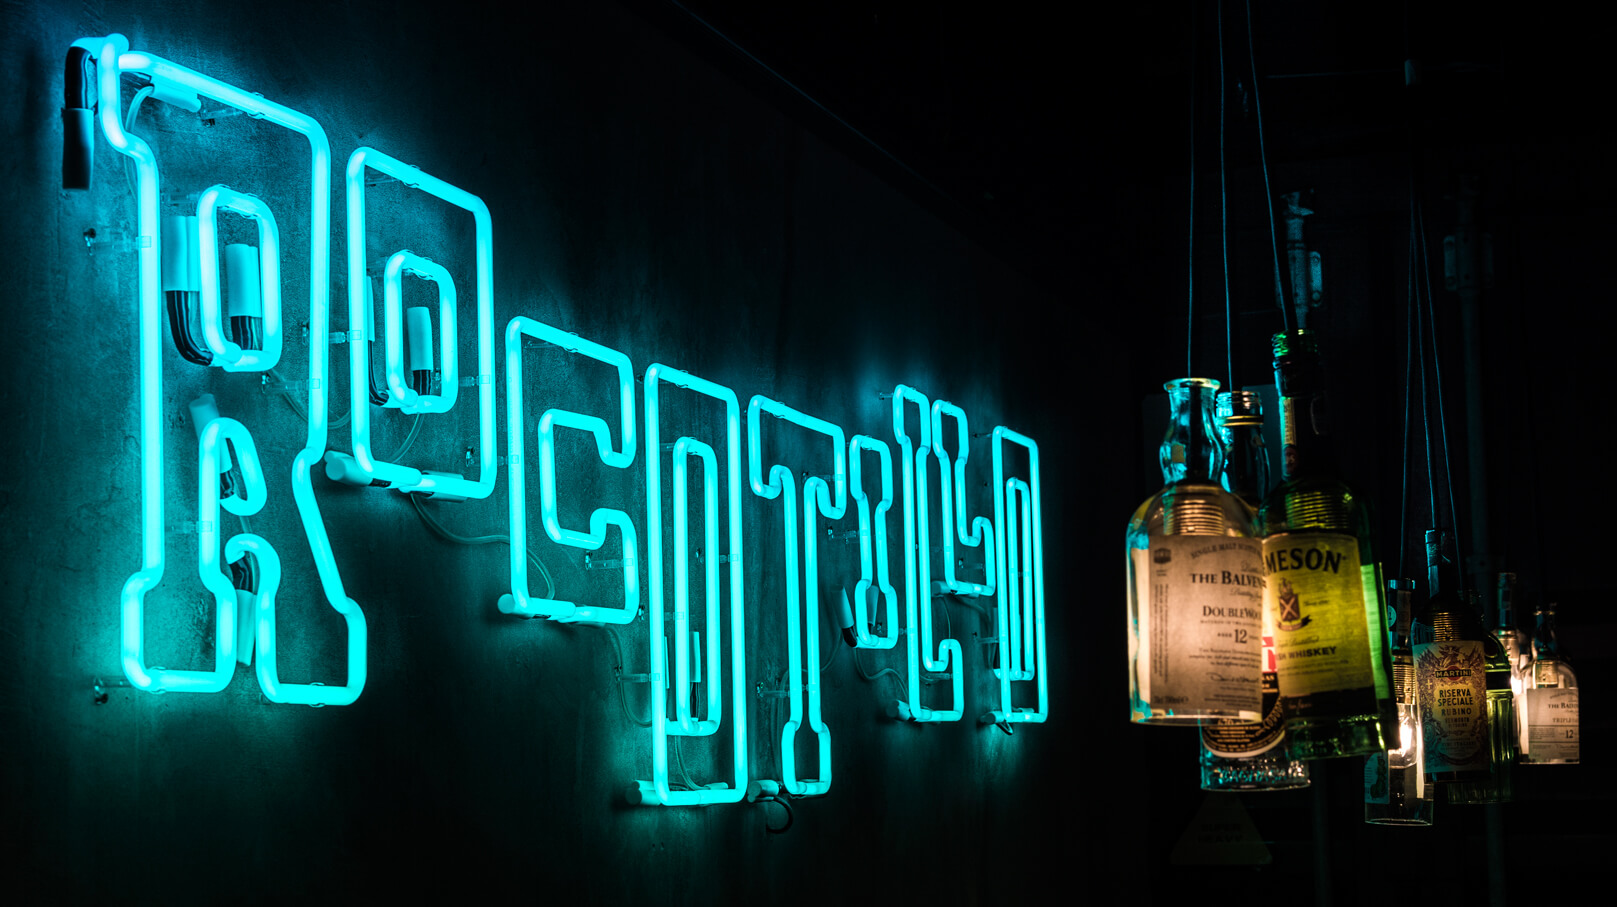 Rocotillo rocotilo - neon-rocotillo-neon-an-der-Wand-innen-restaurant-neon-an-der-Wand-neon-über-Tische-neon-beleuchtet-neon-an-der-Wand-beton-neon-glas-neon-logo-schild